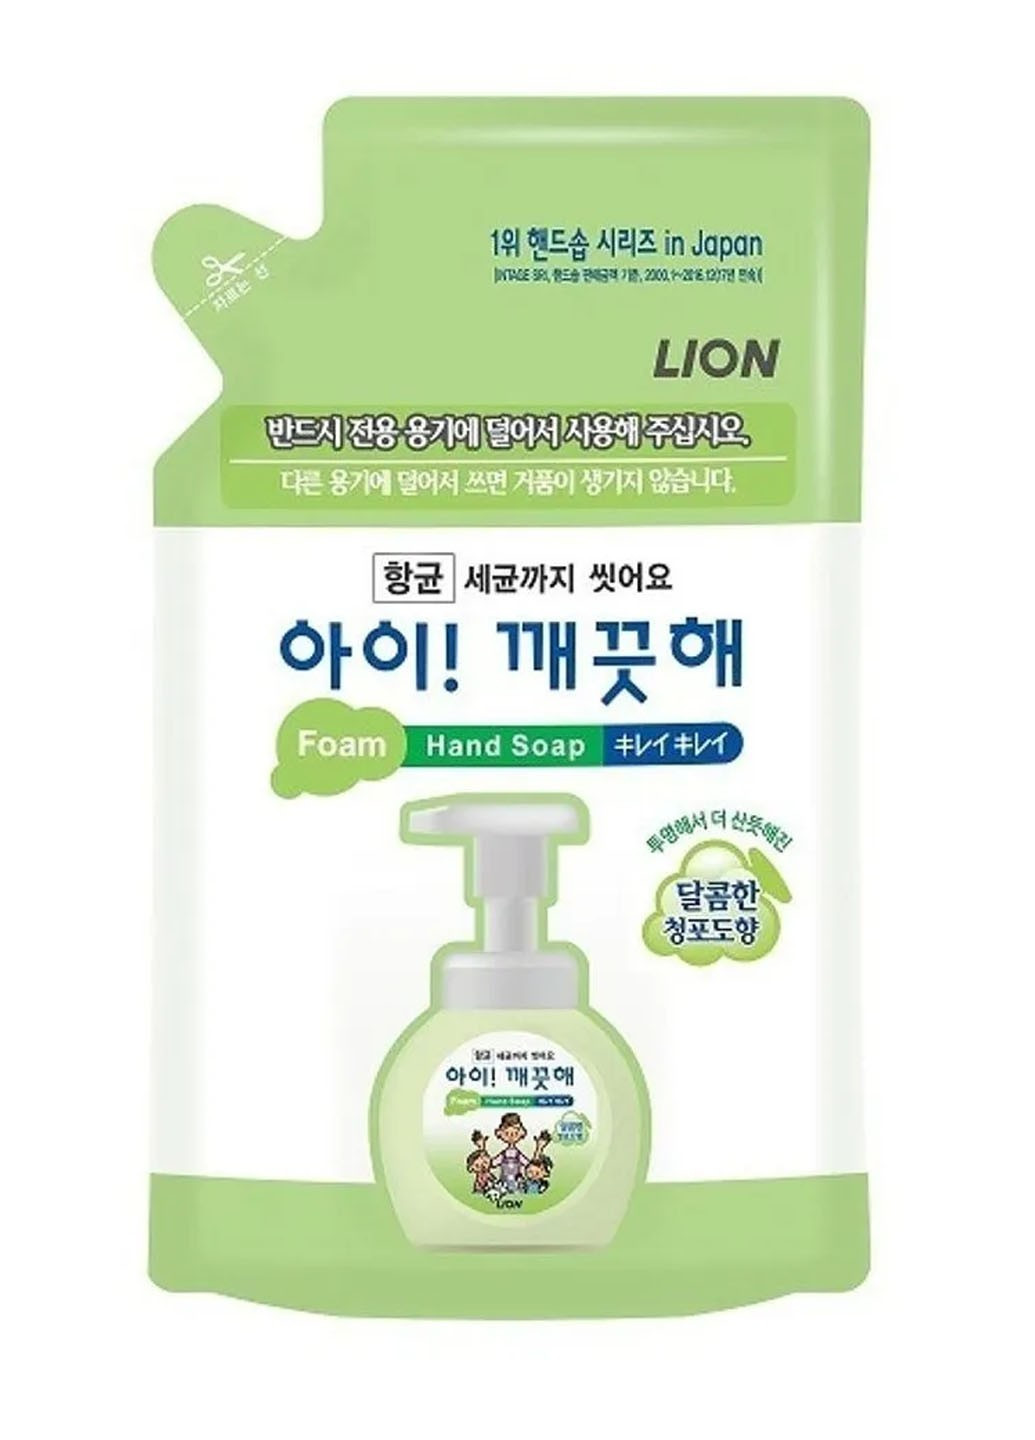 Мило пінне для рук Ai Kekute Foam Hand Soap Muscat Refill мускат у запасці, 200 мл LION KOREA (264668752)